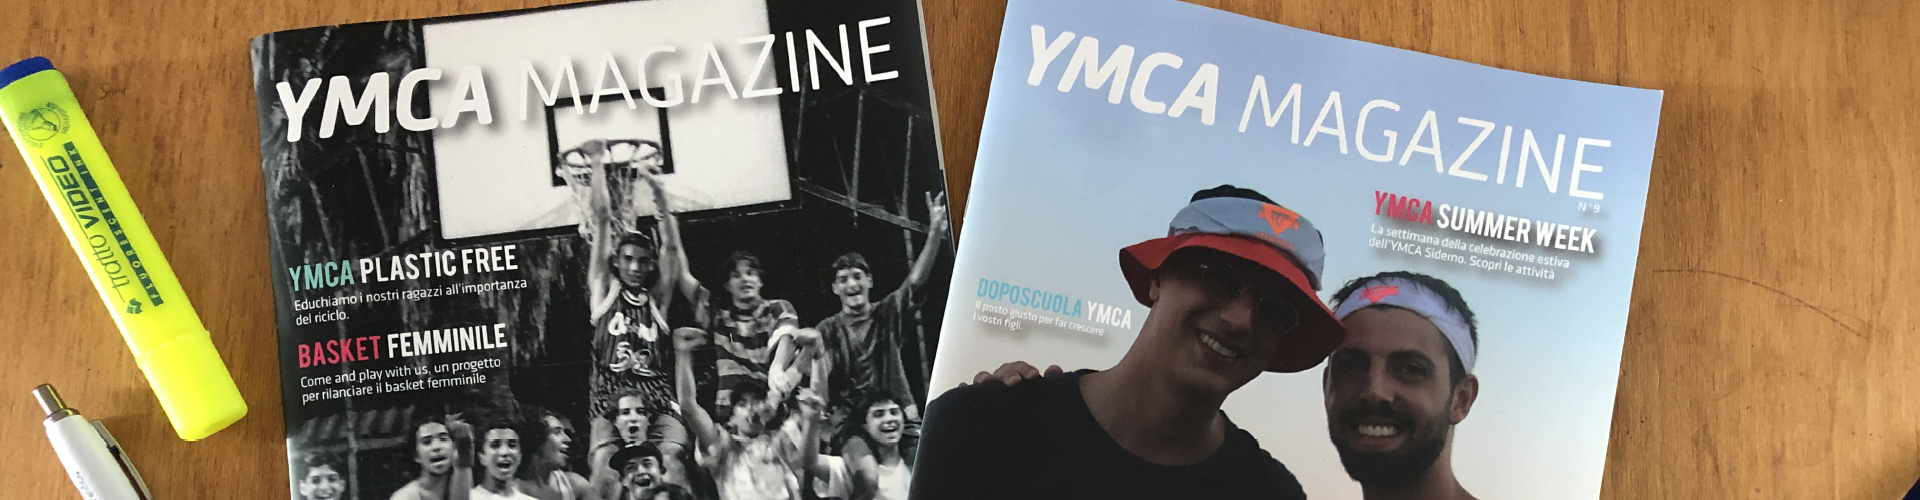 YMCA Magazine - YMCA Siderno